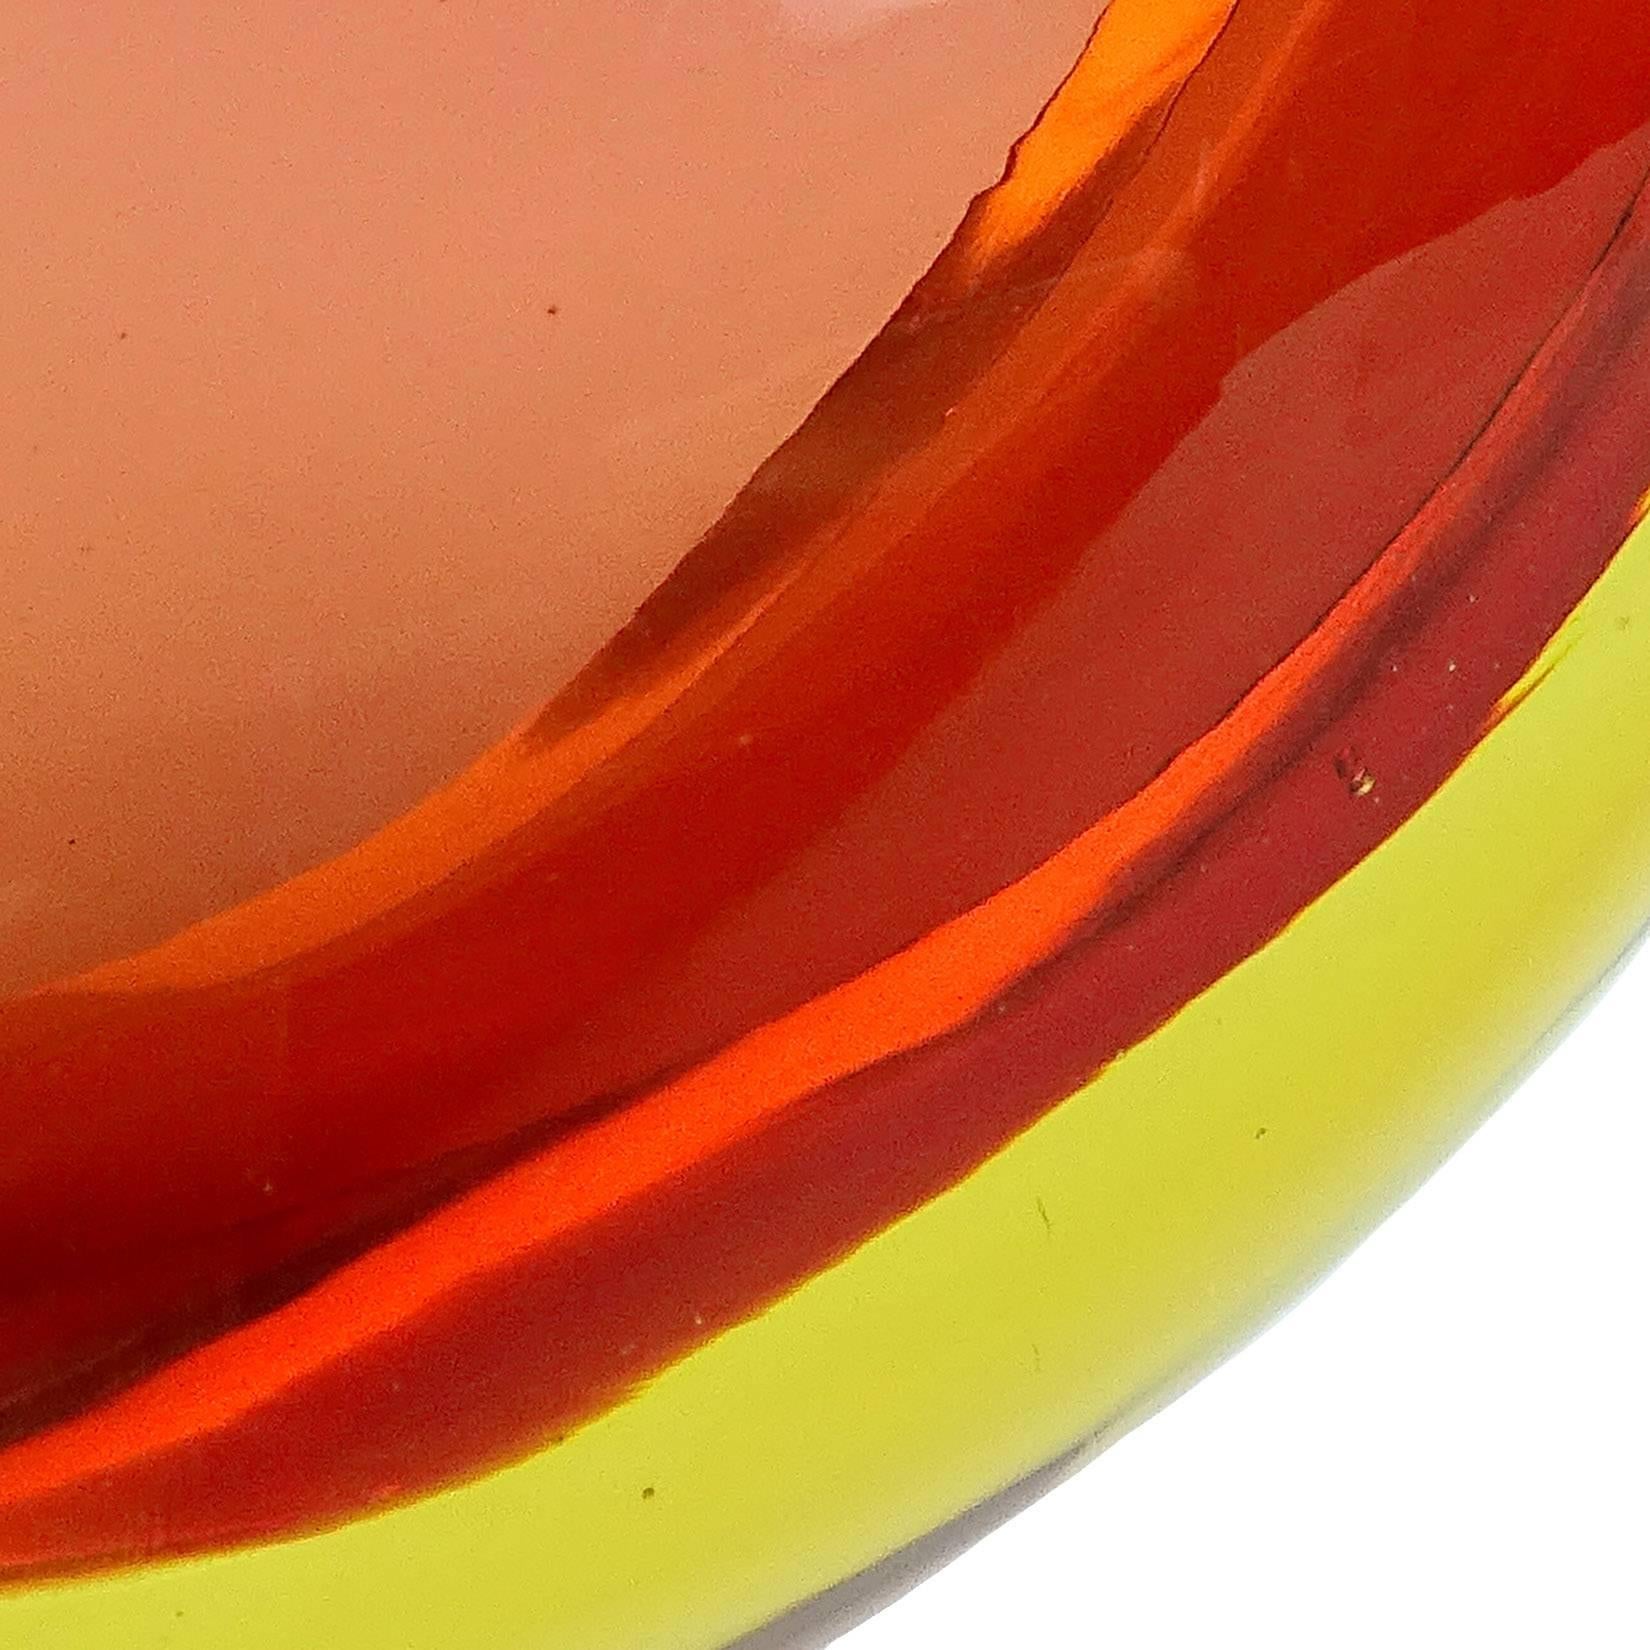 Hand-Crafted Murano Sommerso Orange Yellow Italian Art Glass Geode Flat Cut Rim Bowl Dish